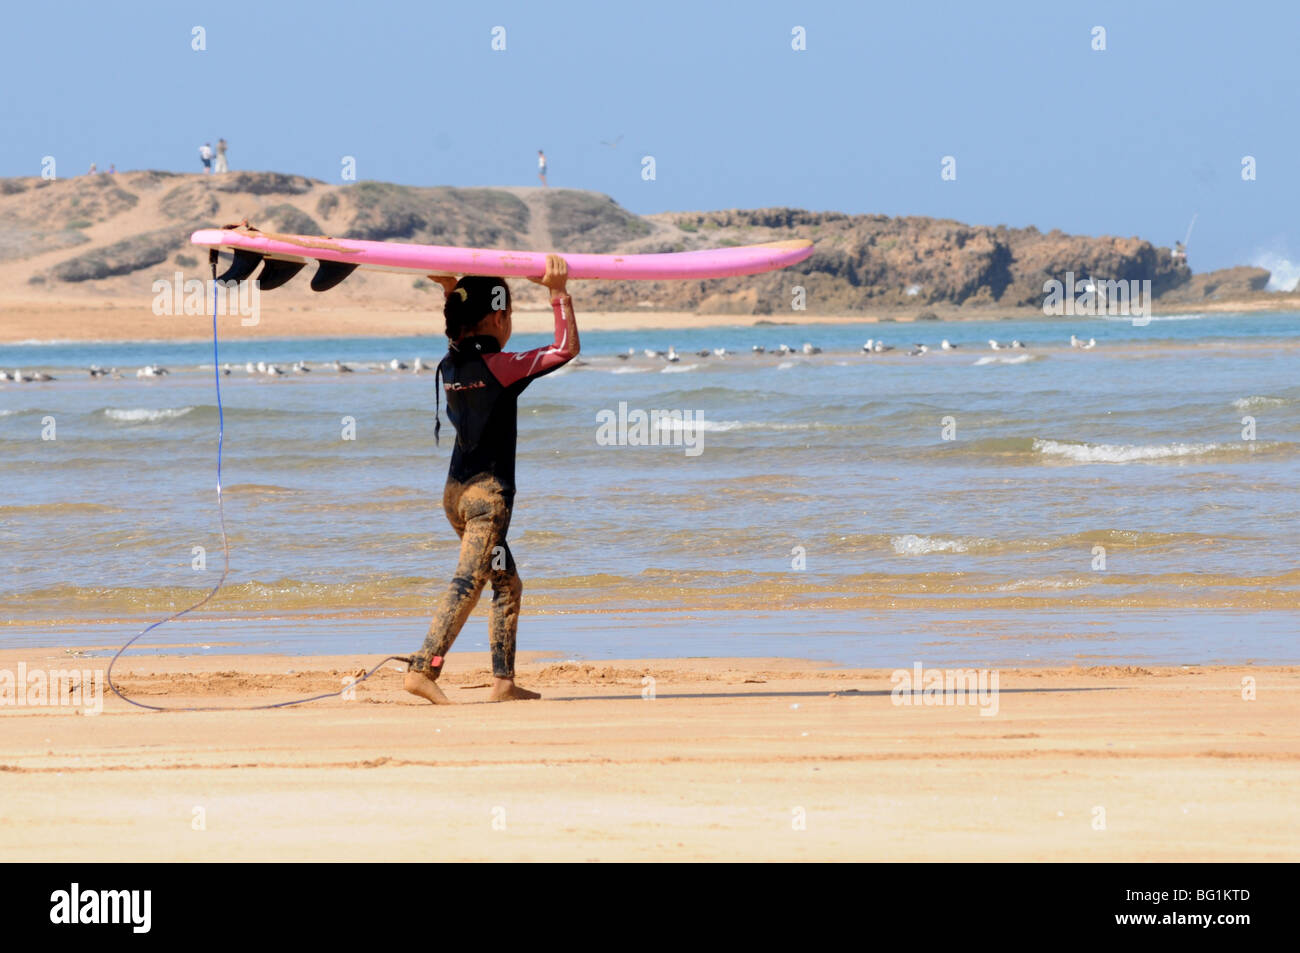 Jeune fille chefs pour le surf, Oualidia, Maroc Banque D'Images